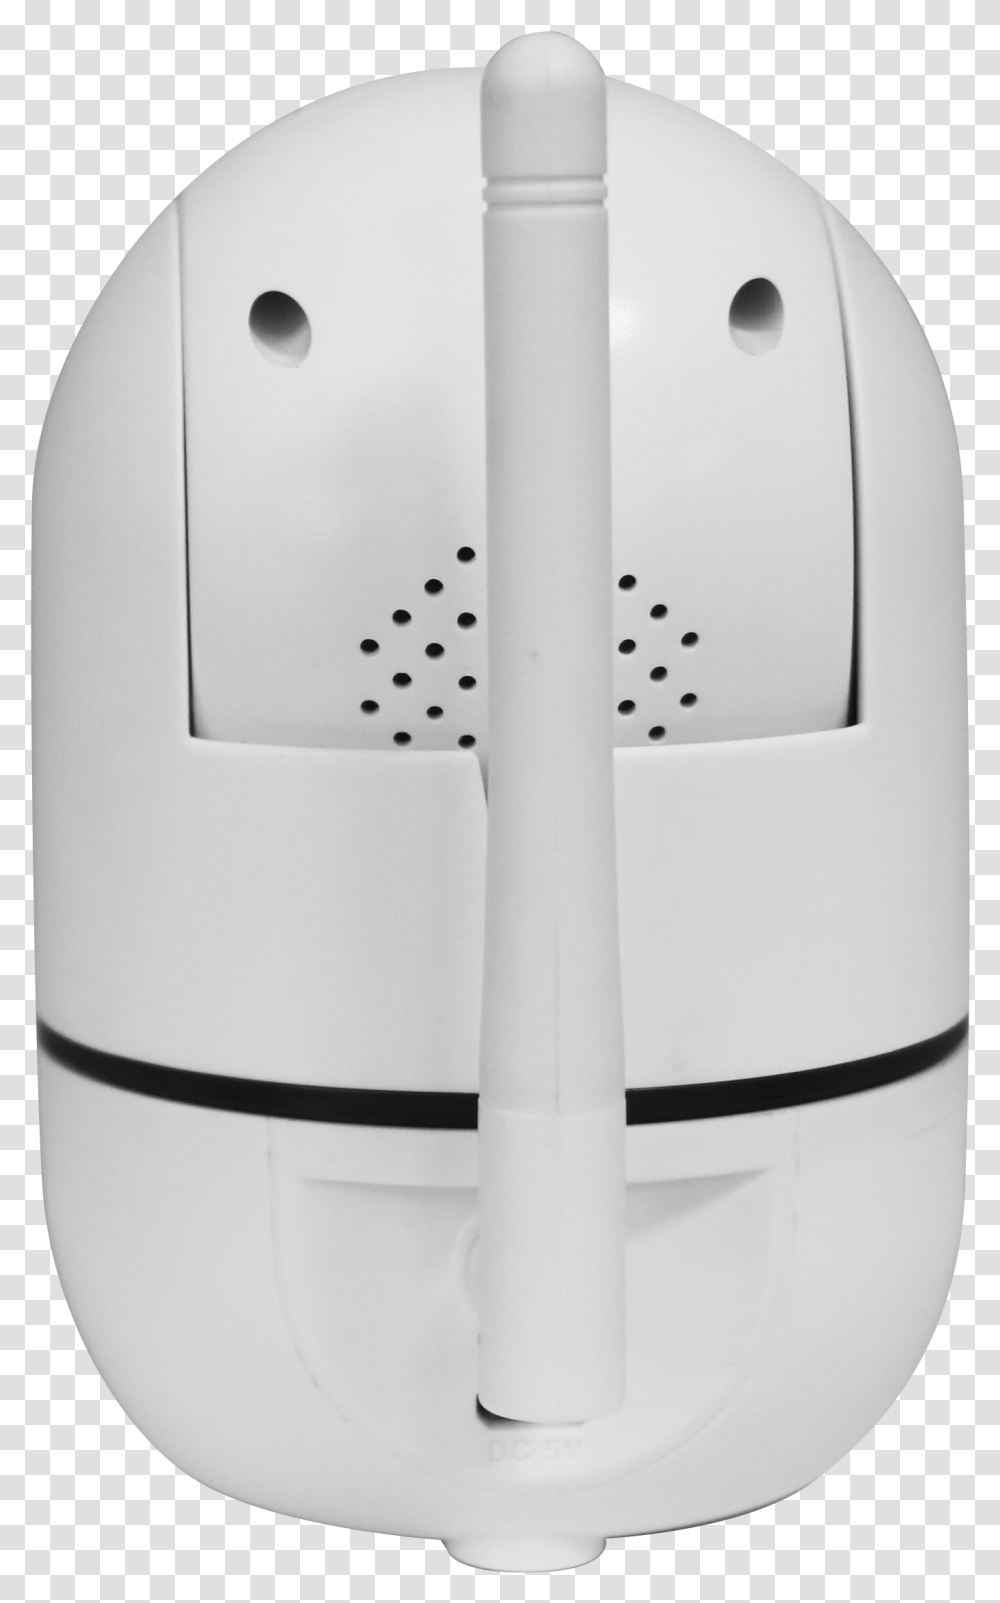 Carbon Monoxide Detector, Mouse, Toilet, Bathroom, Dish Transparent Png